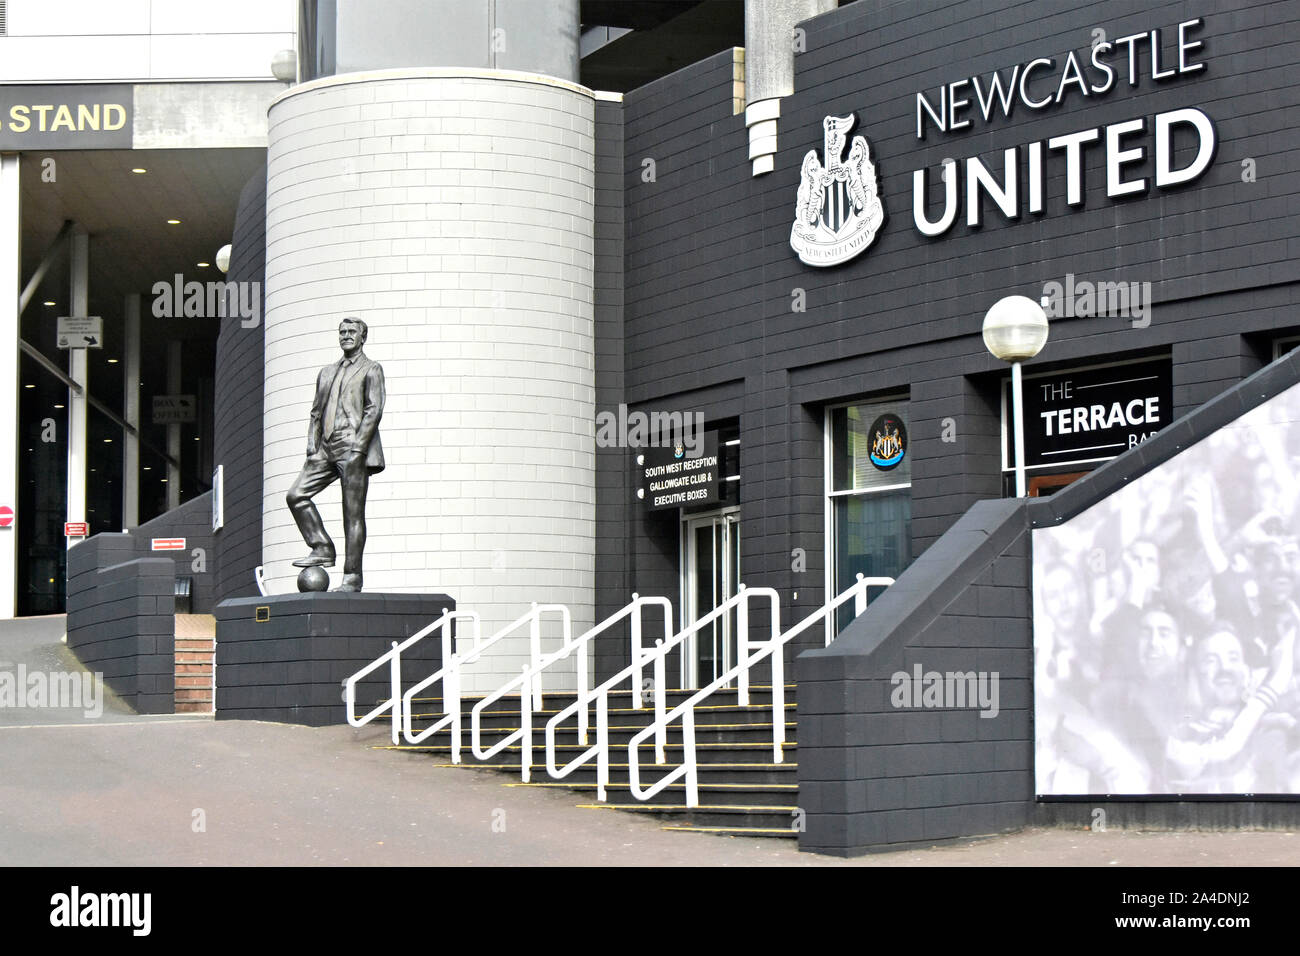 Newcastle United Football Club Teil der St James Park Stadion mit Bronze Statue des berühmten Sir Bobby Robson fußball Spieler und Manager England Großbritannien Stockfoto